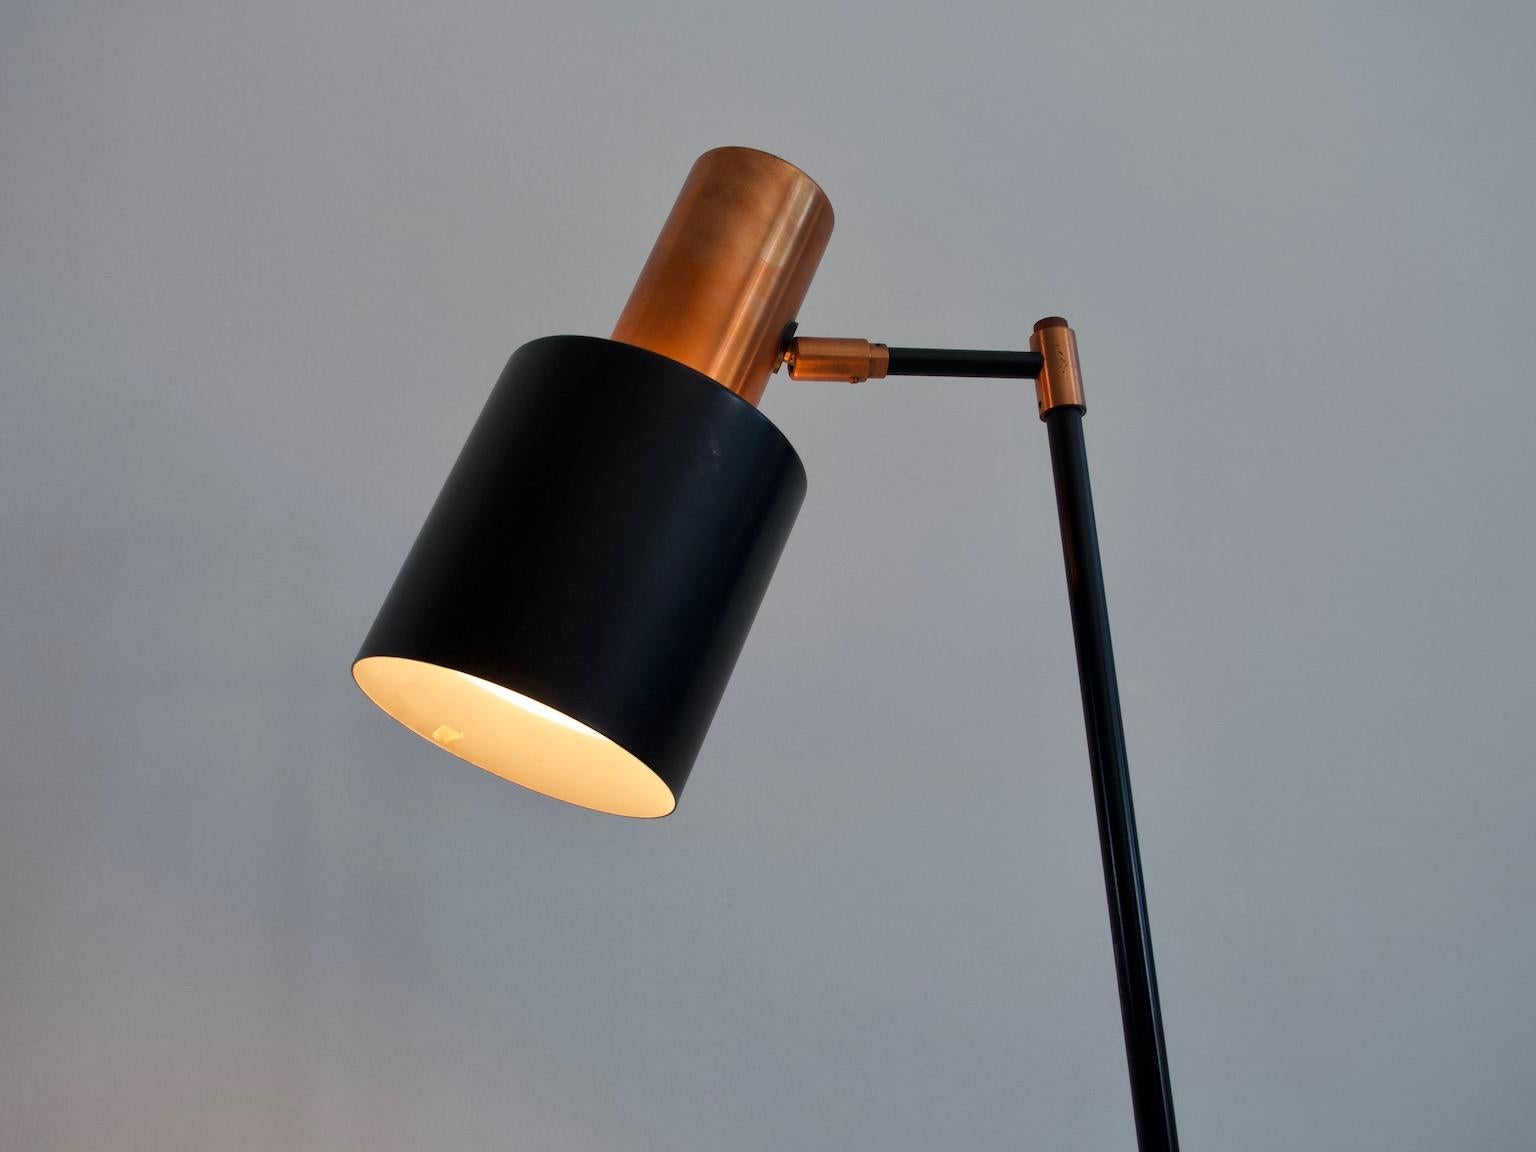 Danish Studio Floor Lamp in Black and Copper by Jo Hammerborg for Fog & Mørup